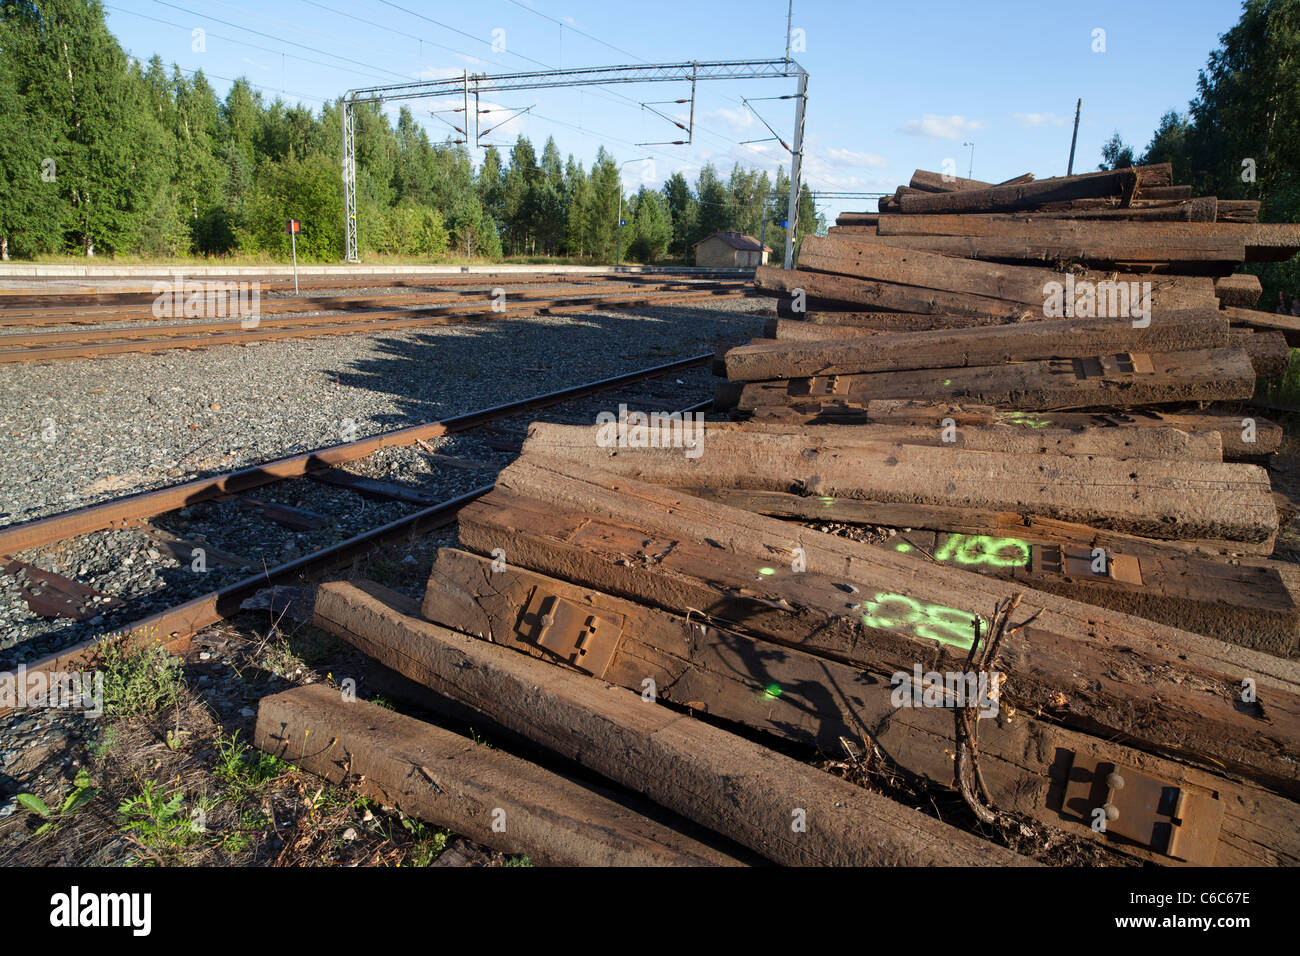 Pila de viejos traviesas de madera del ferrocarril fuera de servicio esperando el transporte, Finlandia Foto de stock